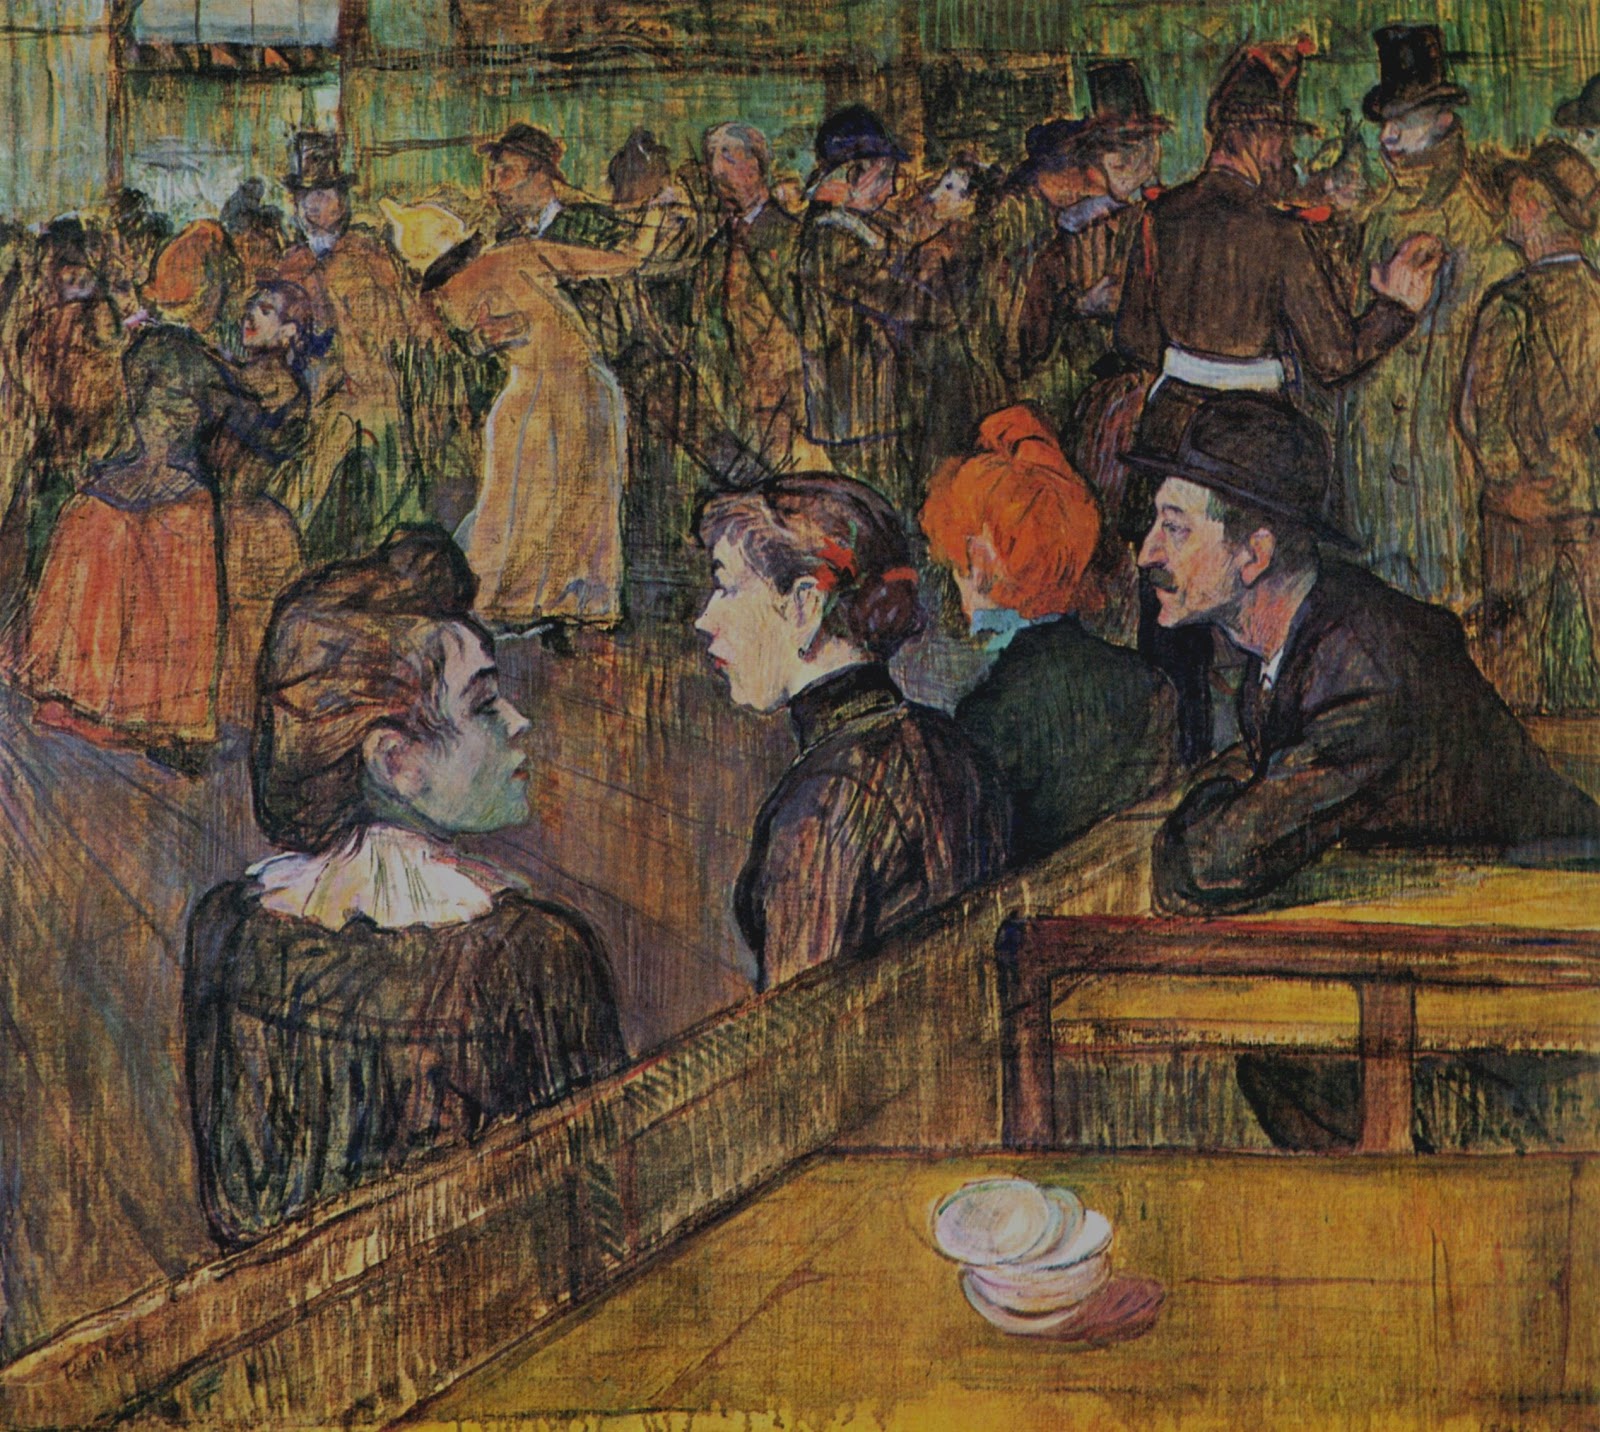 Henri+de+Toulouse+Lautrec-1864-1901 (133).jpg